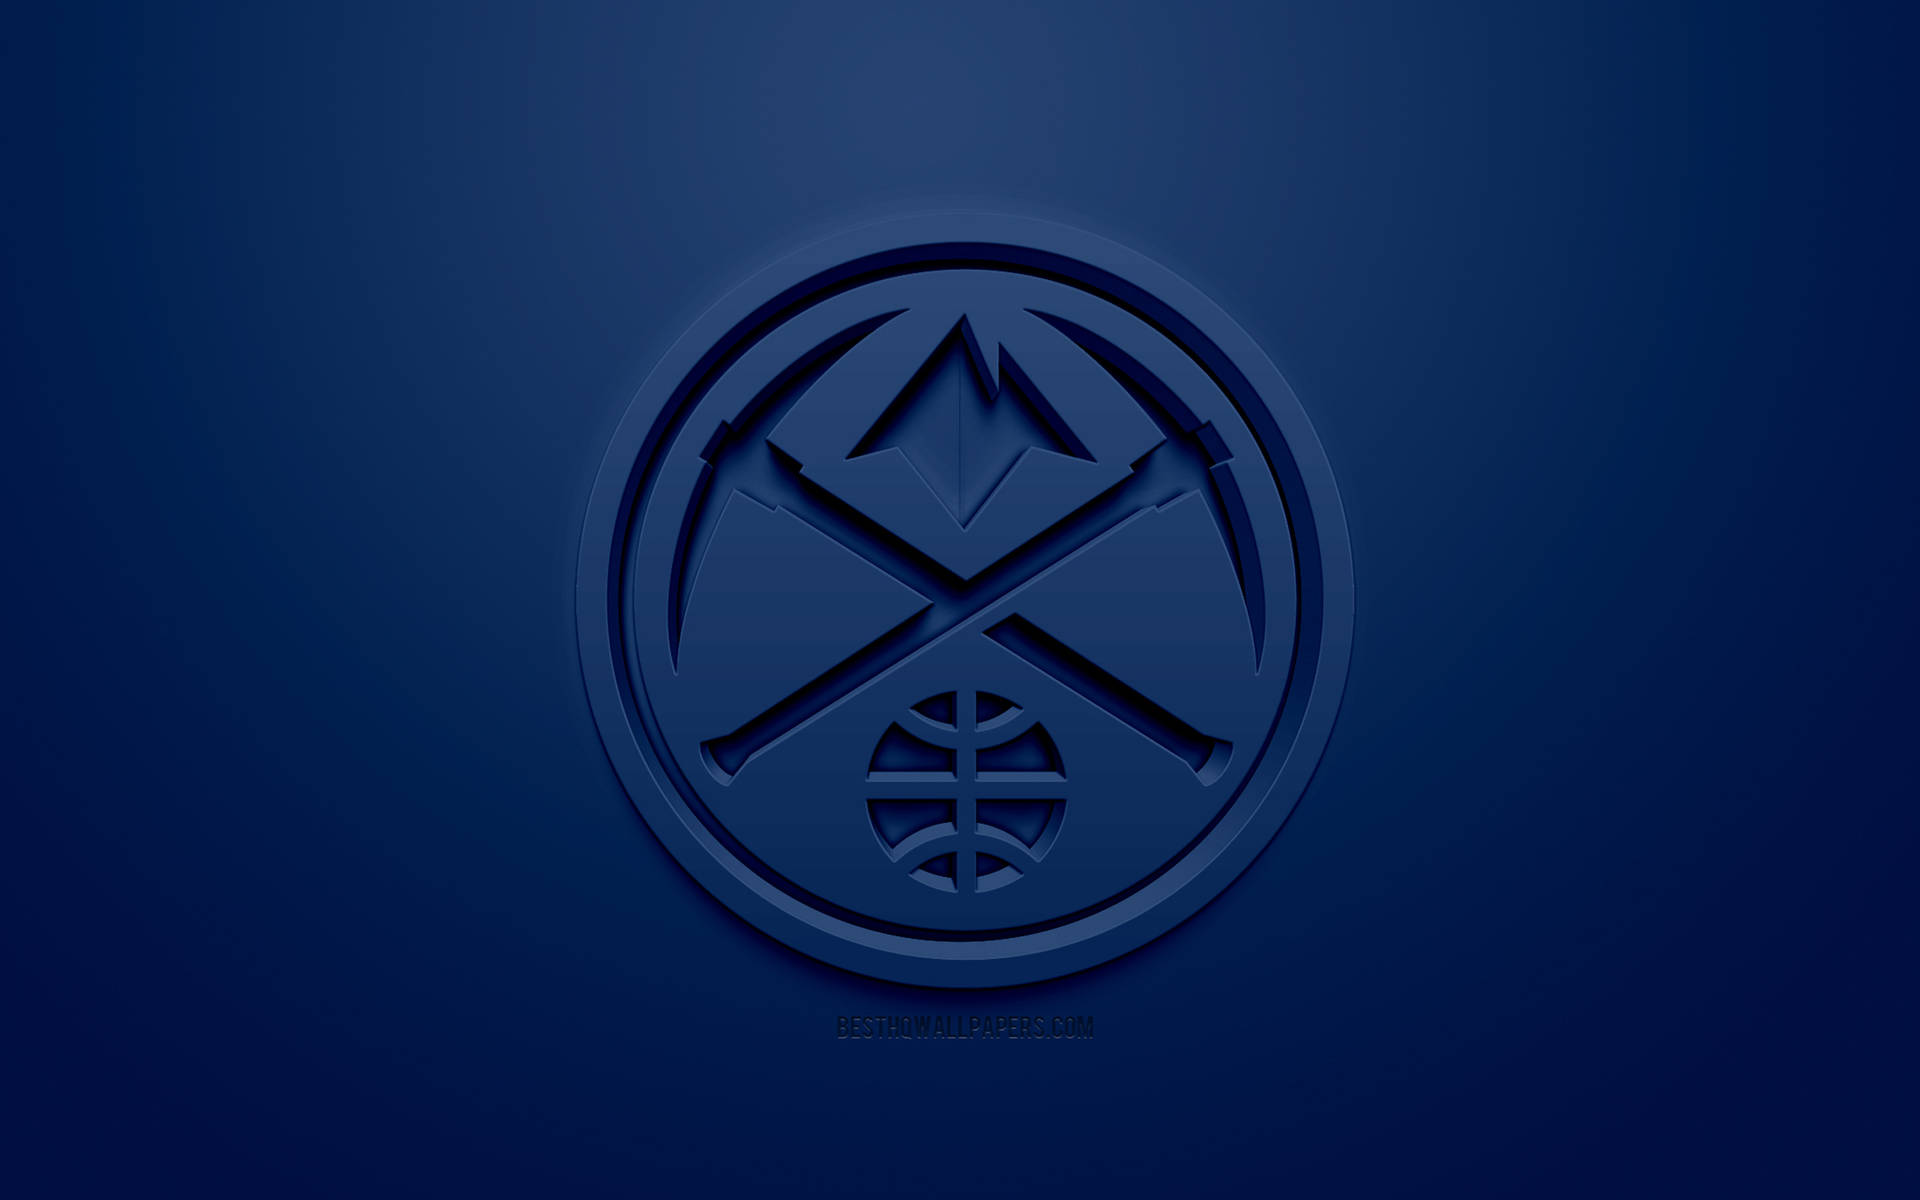 3d Denver Nuggets Emblem Background